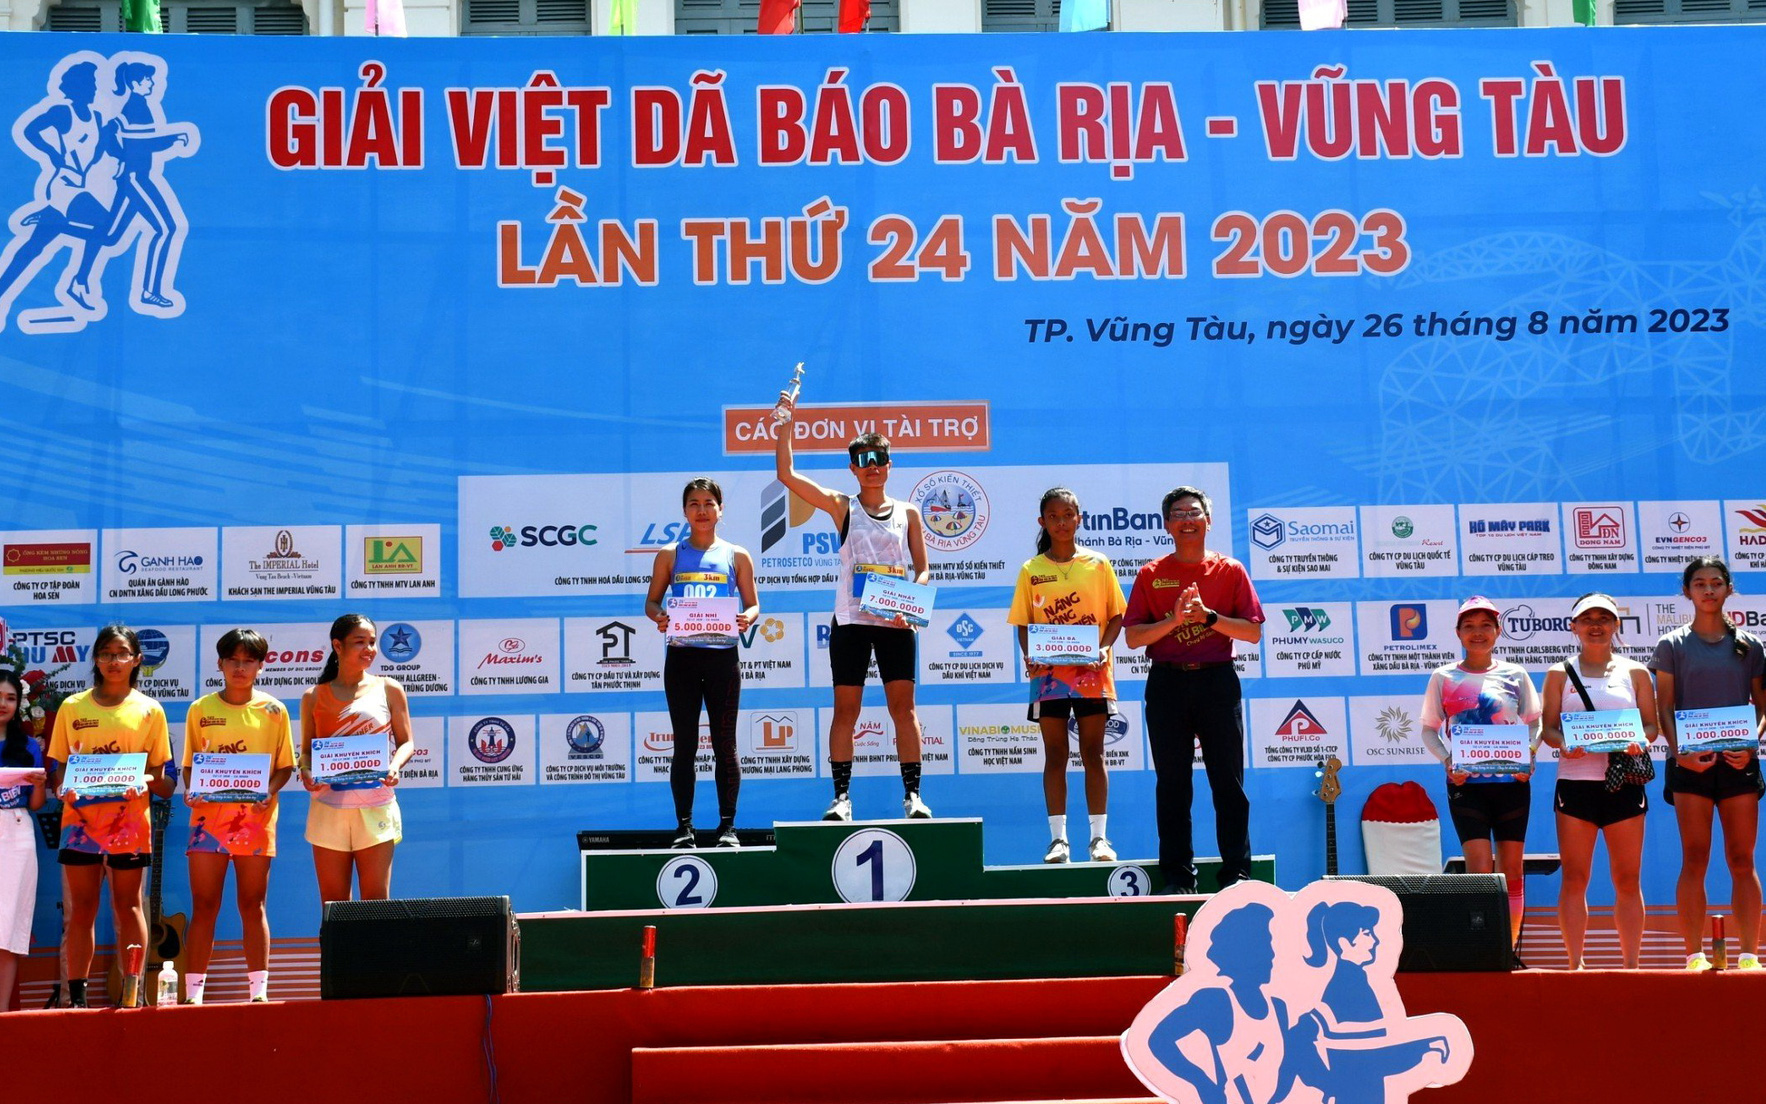 VĐV từng đoạt HCV SEA Games về nhất cự ly 21km tại Giải Việt dã báo Bà Rịa - Vũng Tàu